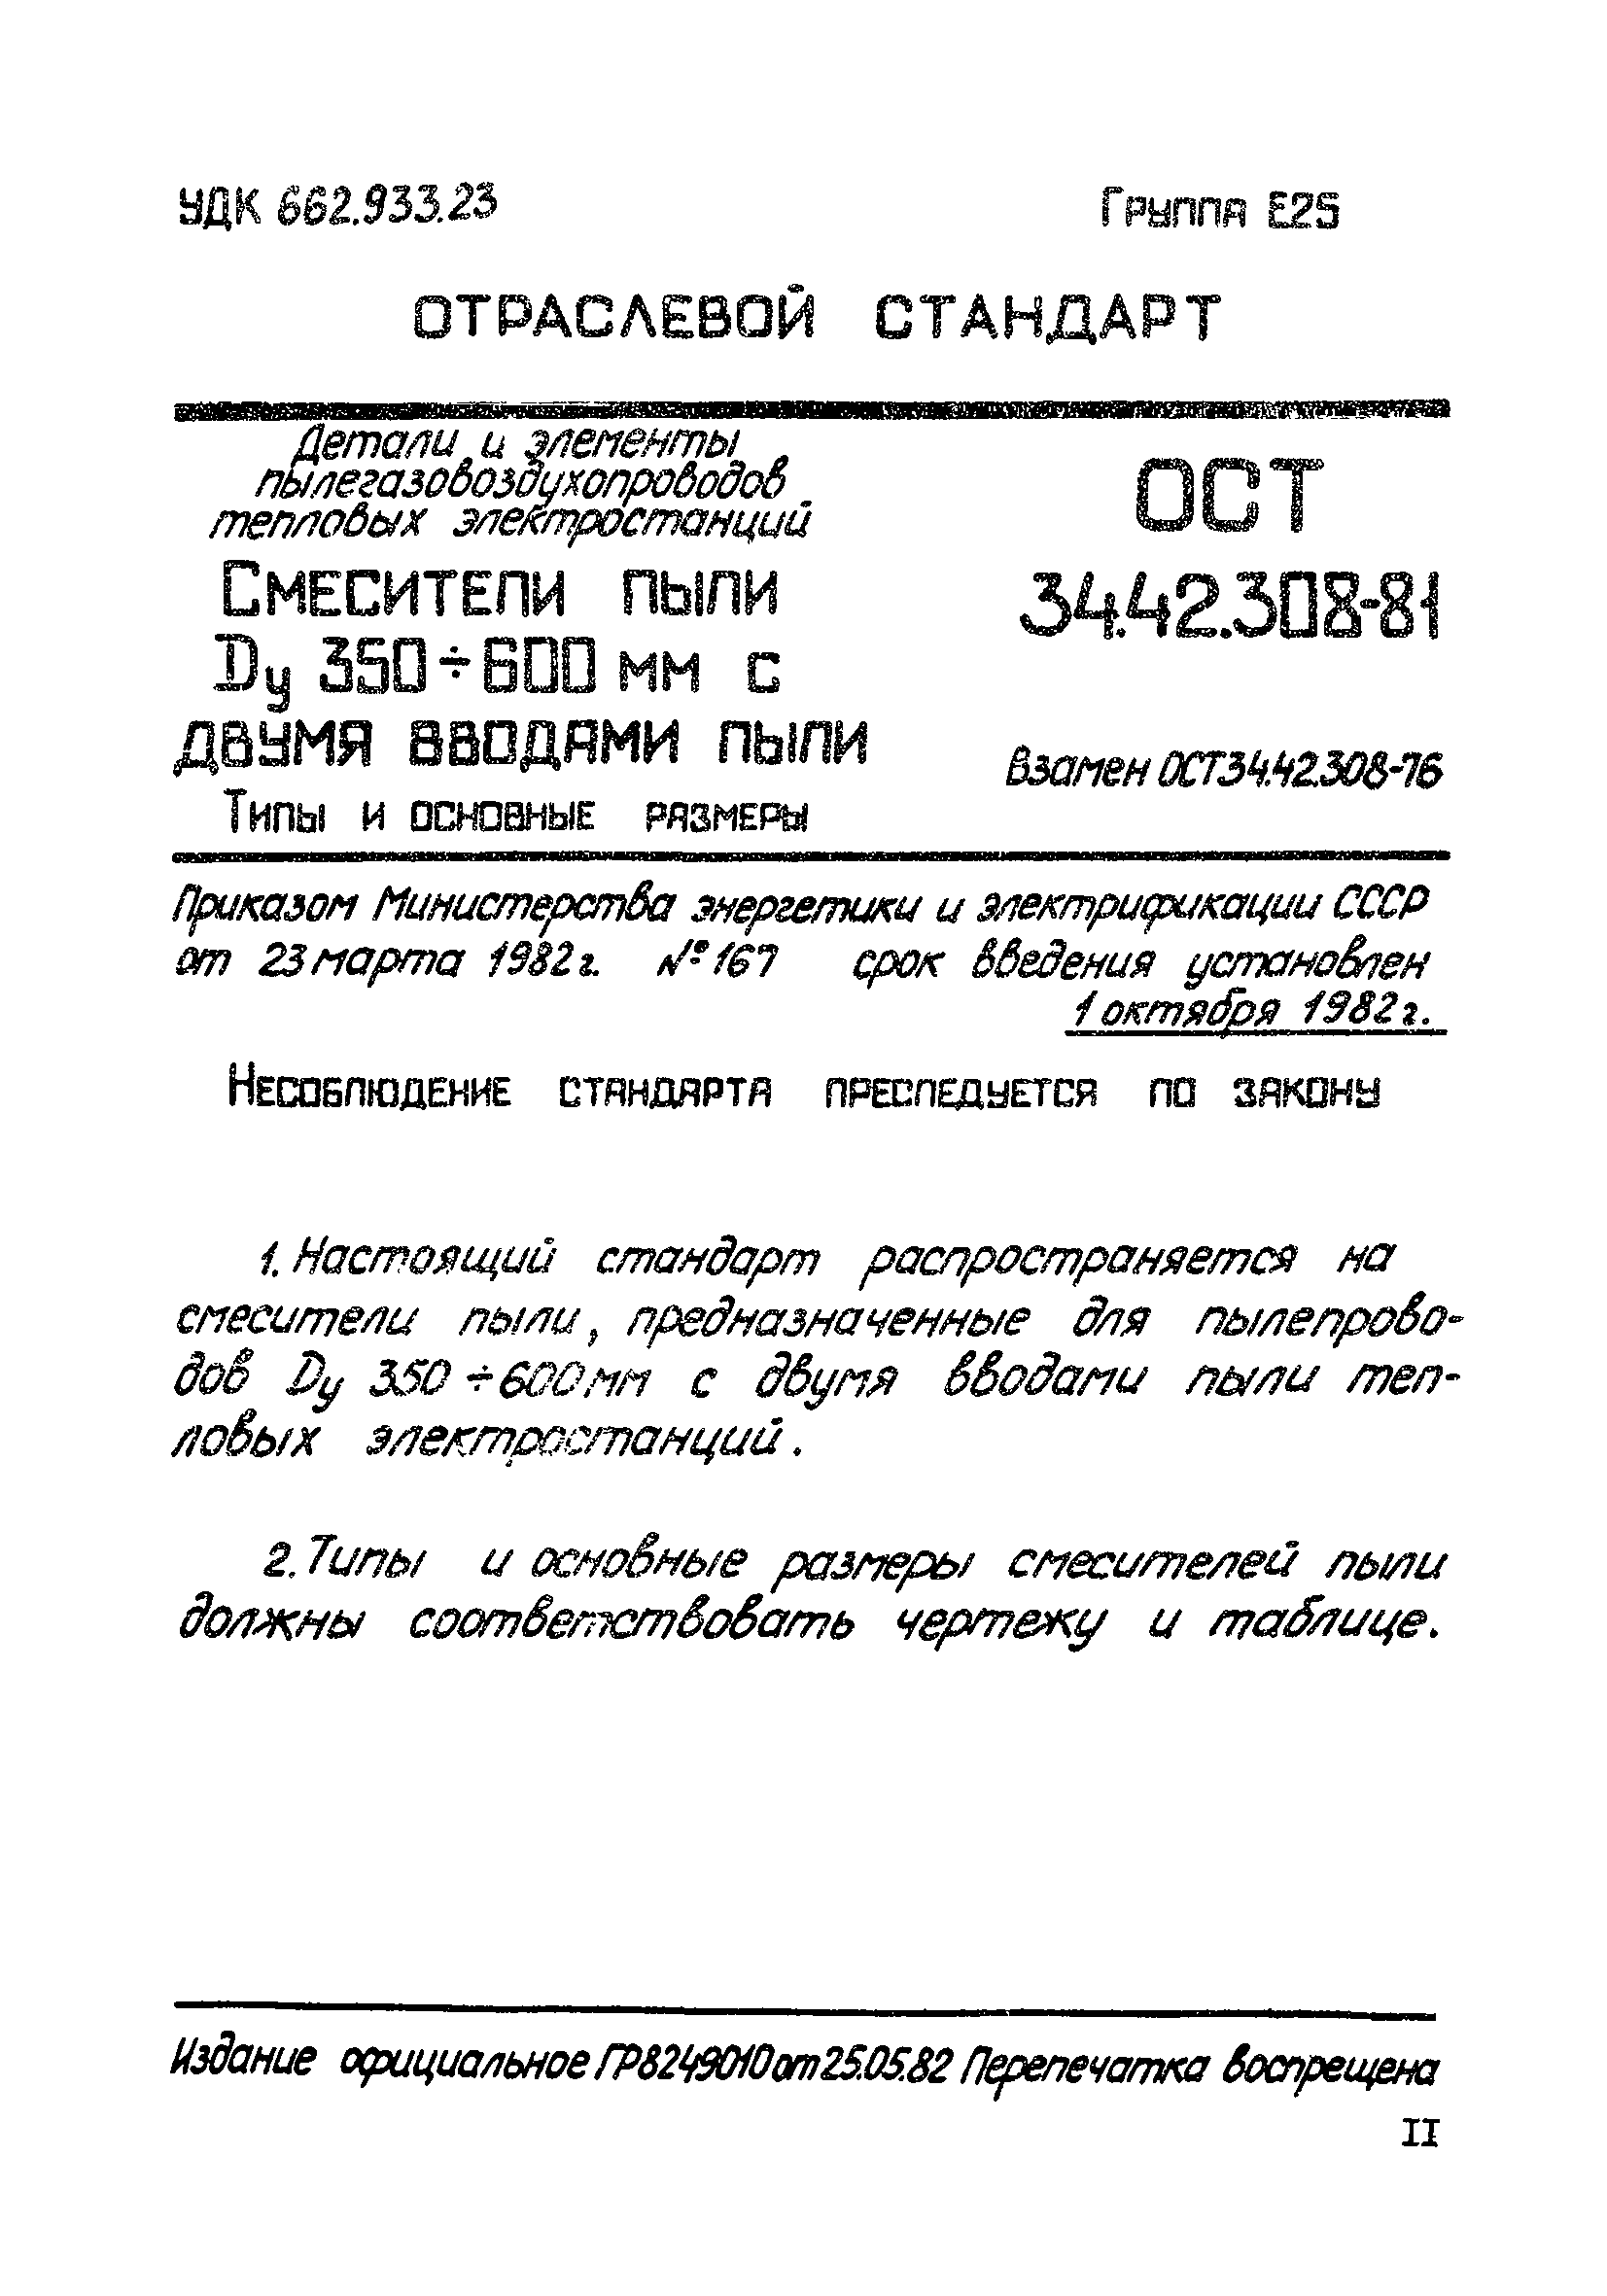 ОСТ 34-42-308-81